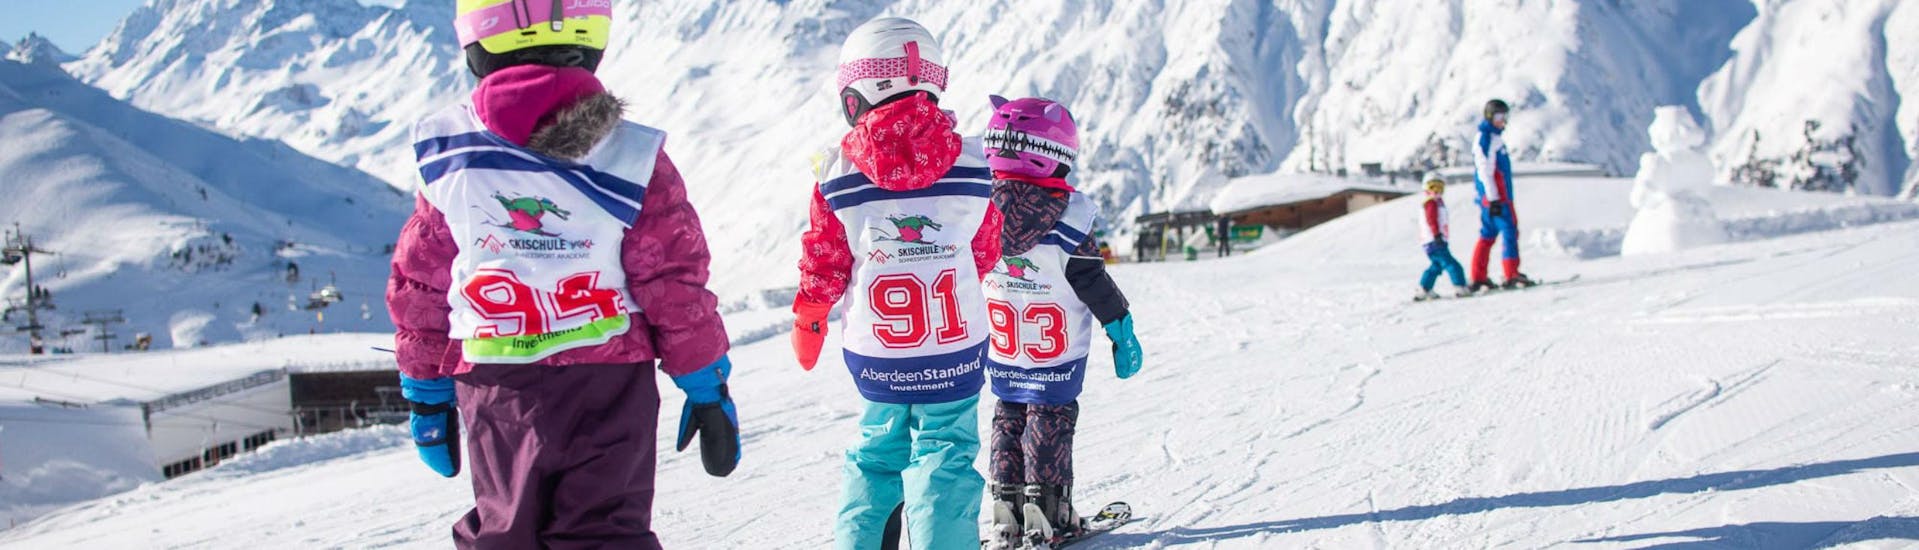 Trois jeunes enfants skient l'un derrière l'autre sur un espace plat de neige pendant leur cours de ski pour enfants (6-15 ans) - premier cours dans la station de ski d'Ischgl.